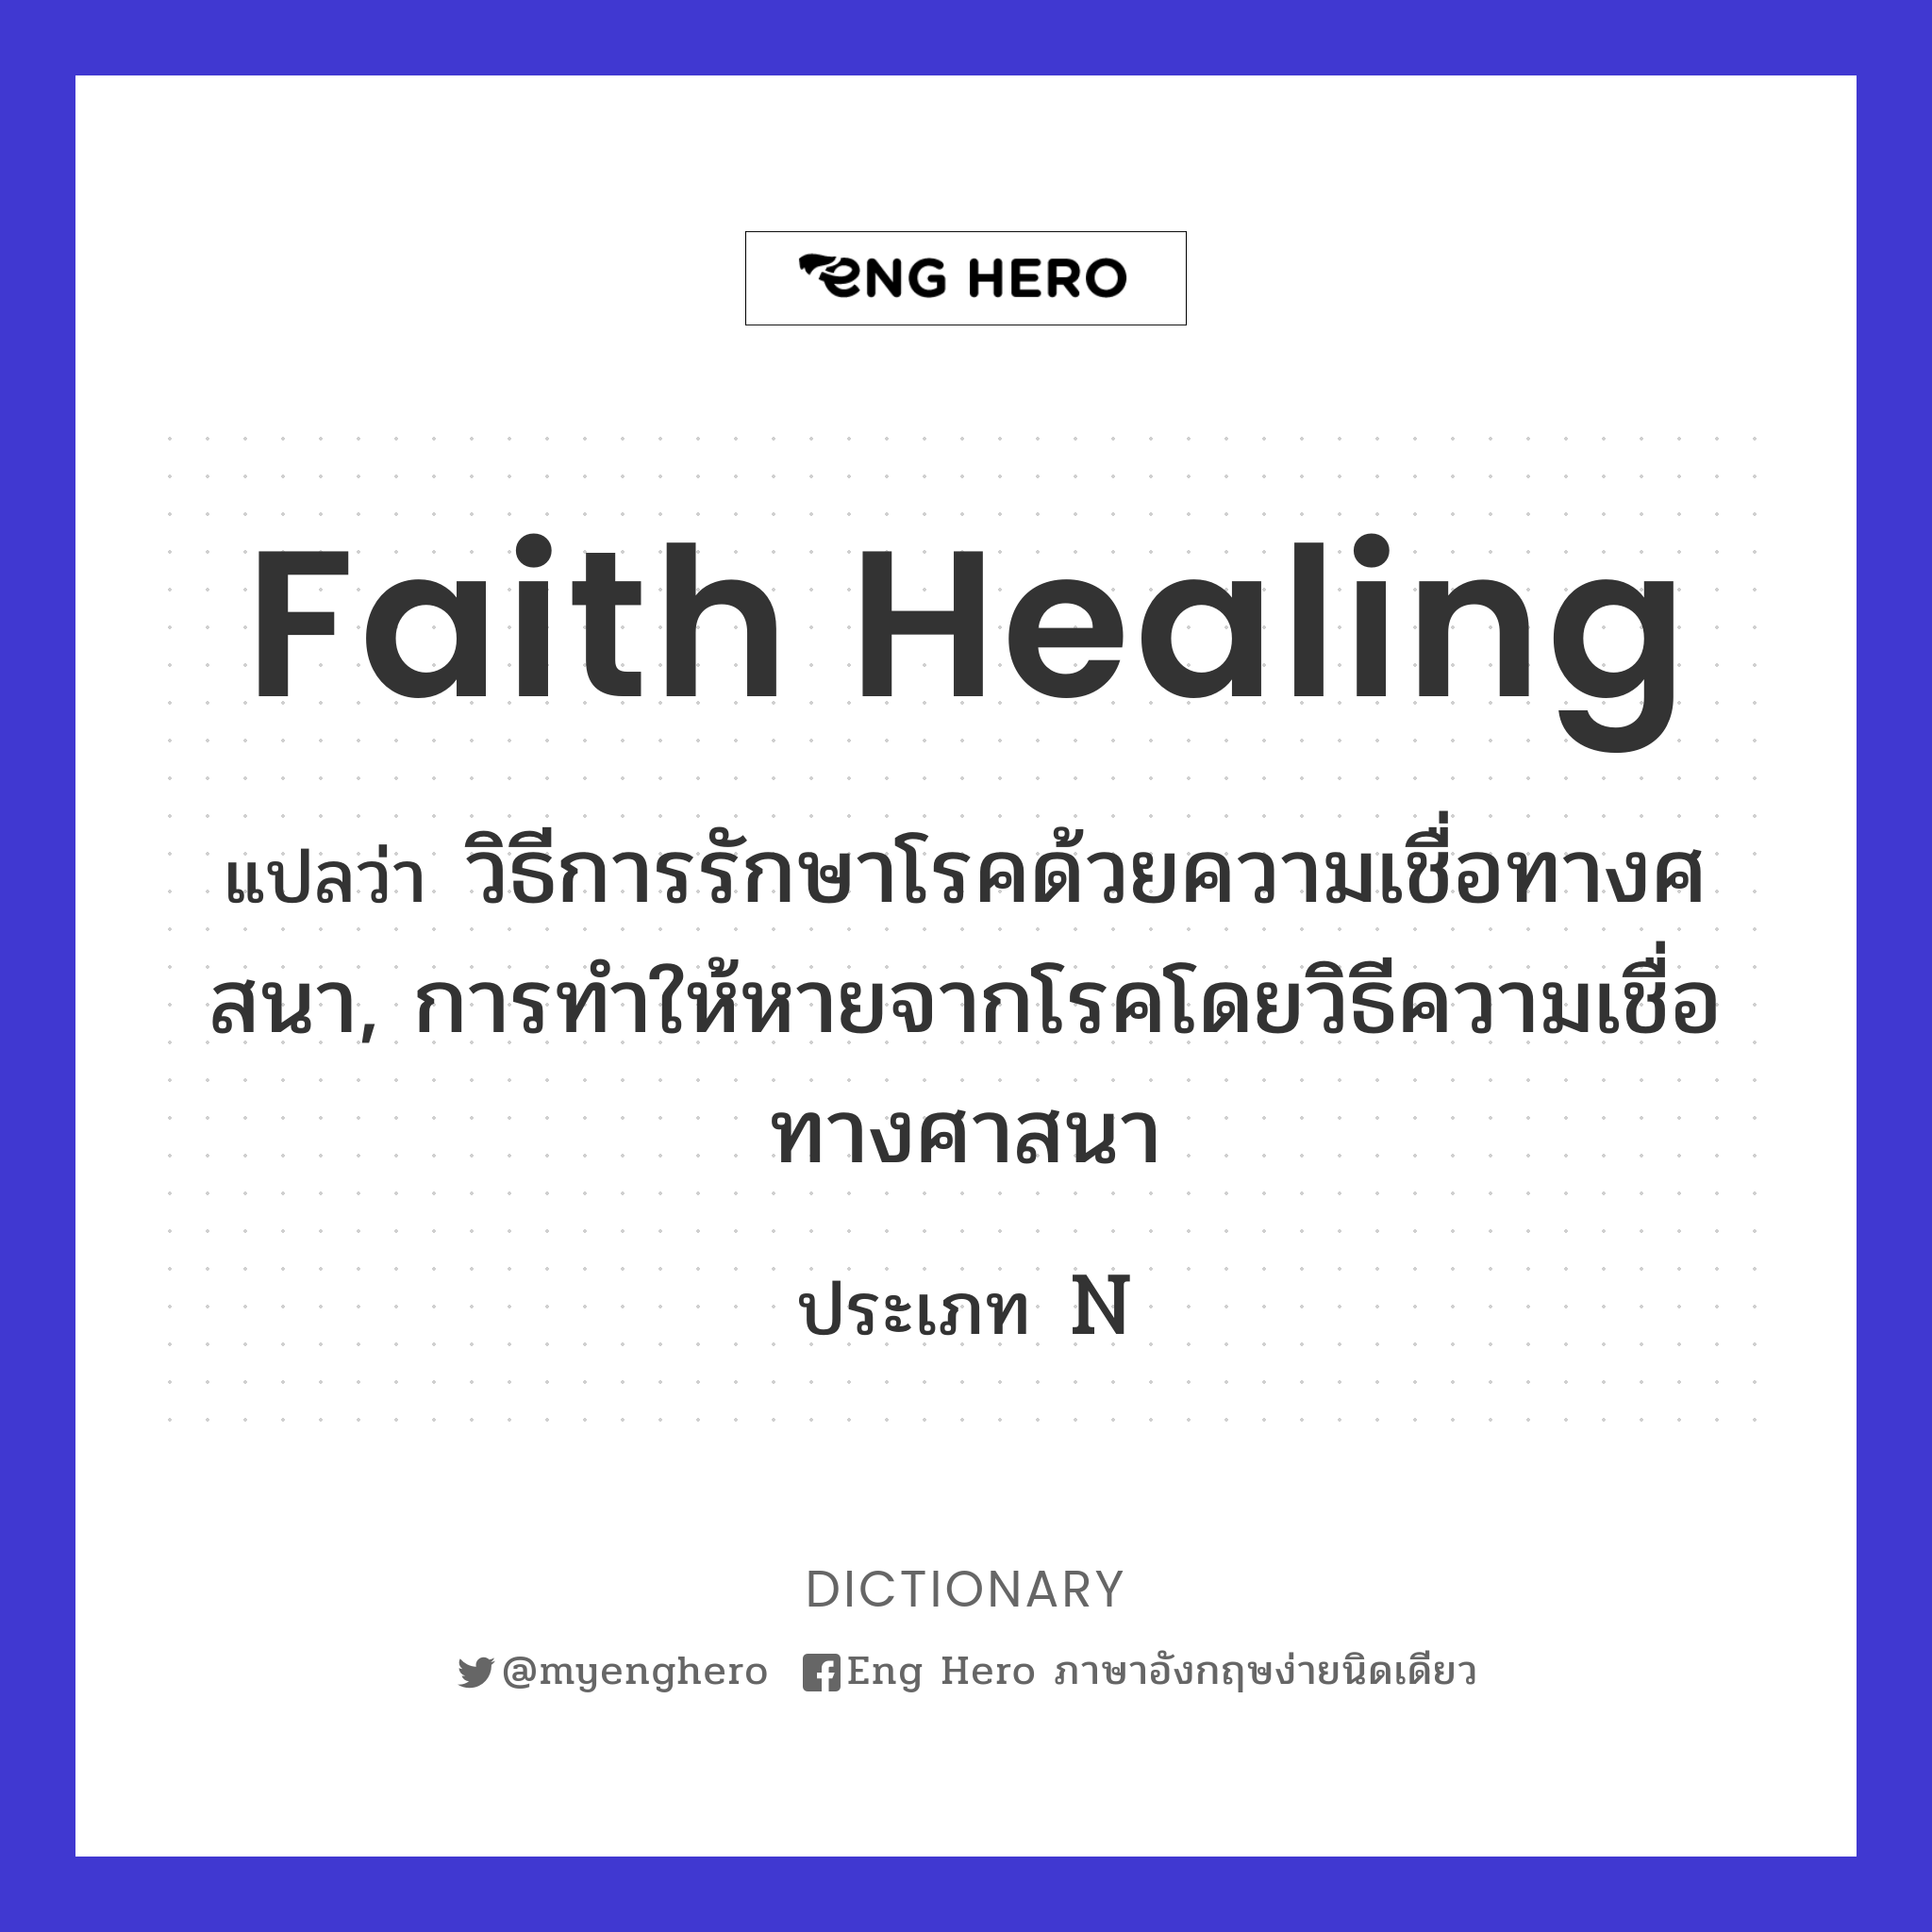 Faith Healing แปลว่า วิธีการรักษาโรคด้วยความเชื่อทางศสนา, การทำให้หาย ...